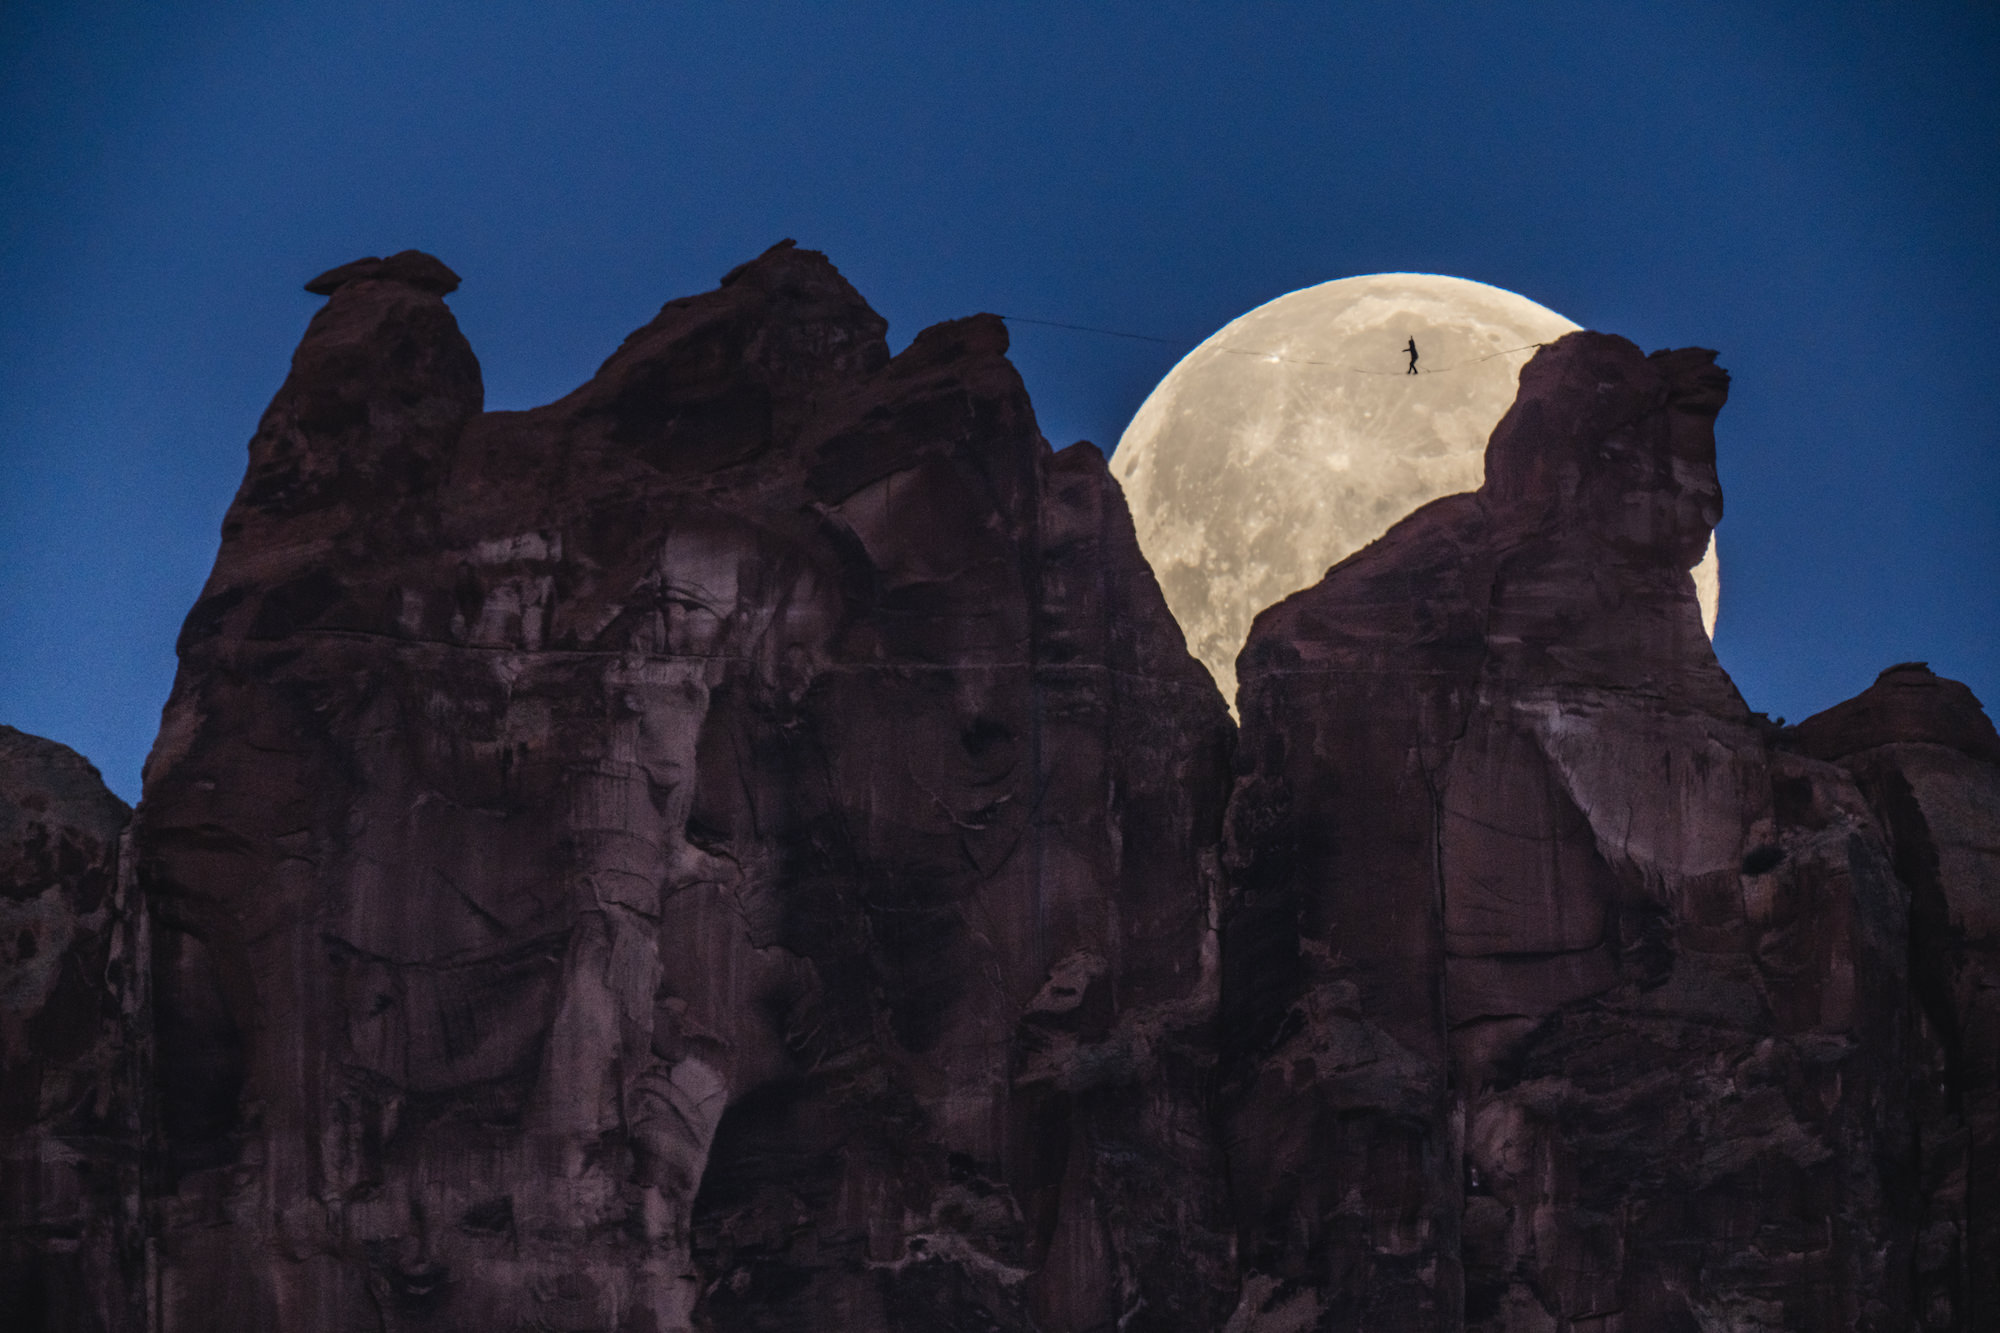 Bộ ảnh đi dây trên cao cùng với Mặt Trăng: “...như có tầm nhìn đêm với a7S III” từ NAG Renan Ozturk